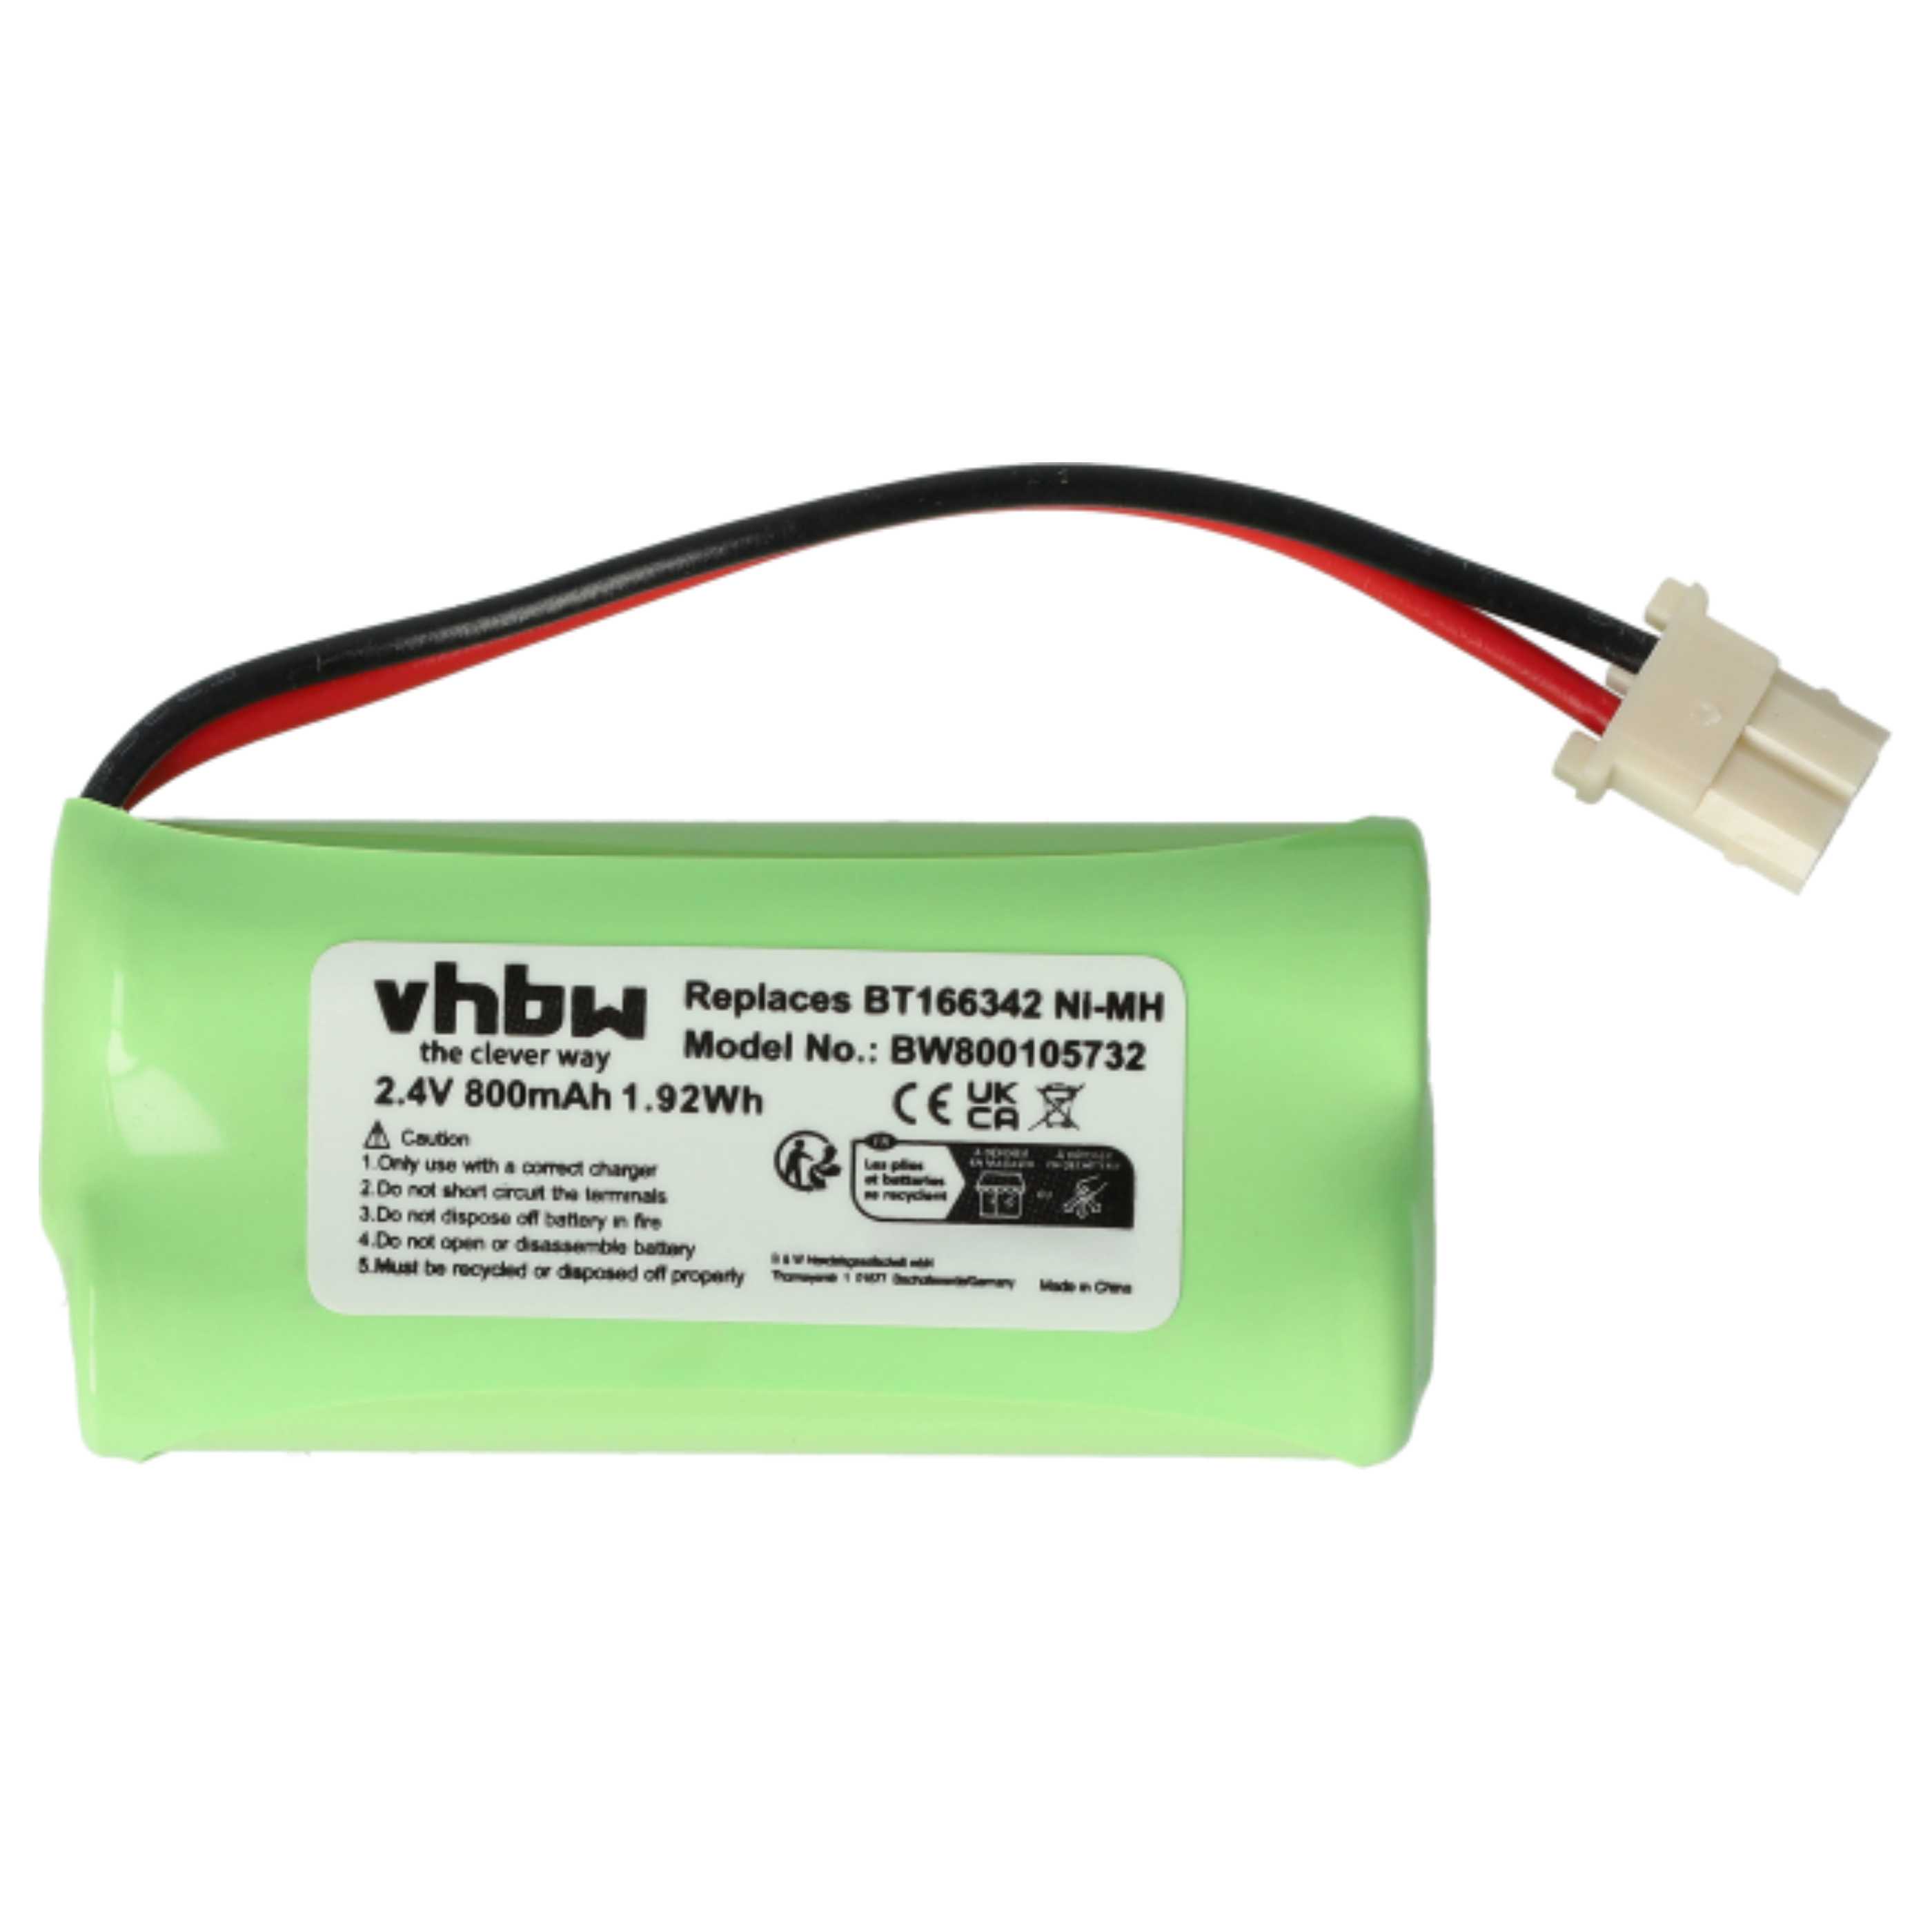 Batterie remplace V-Tech BT166342, 43AAA70PS2, BT266342 pour moniteur bébé - 800mAh 2,4V NiMH